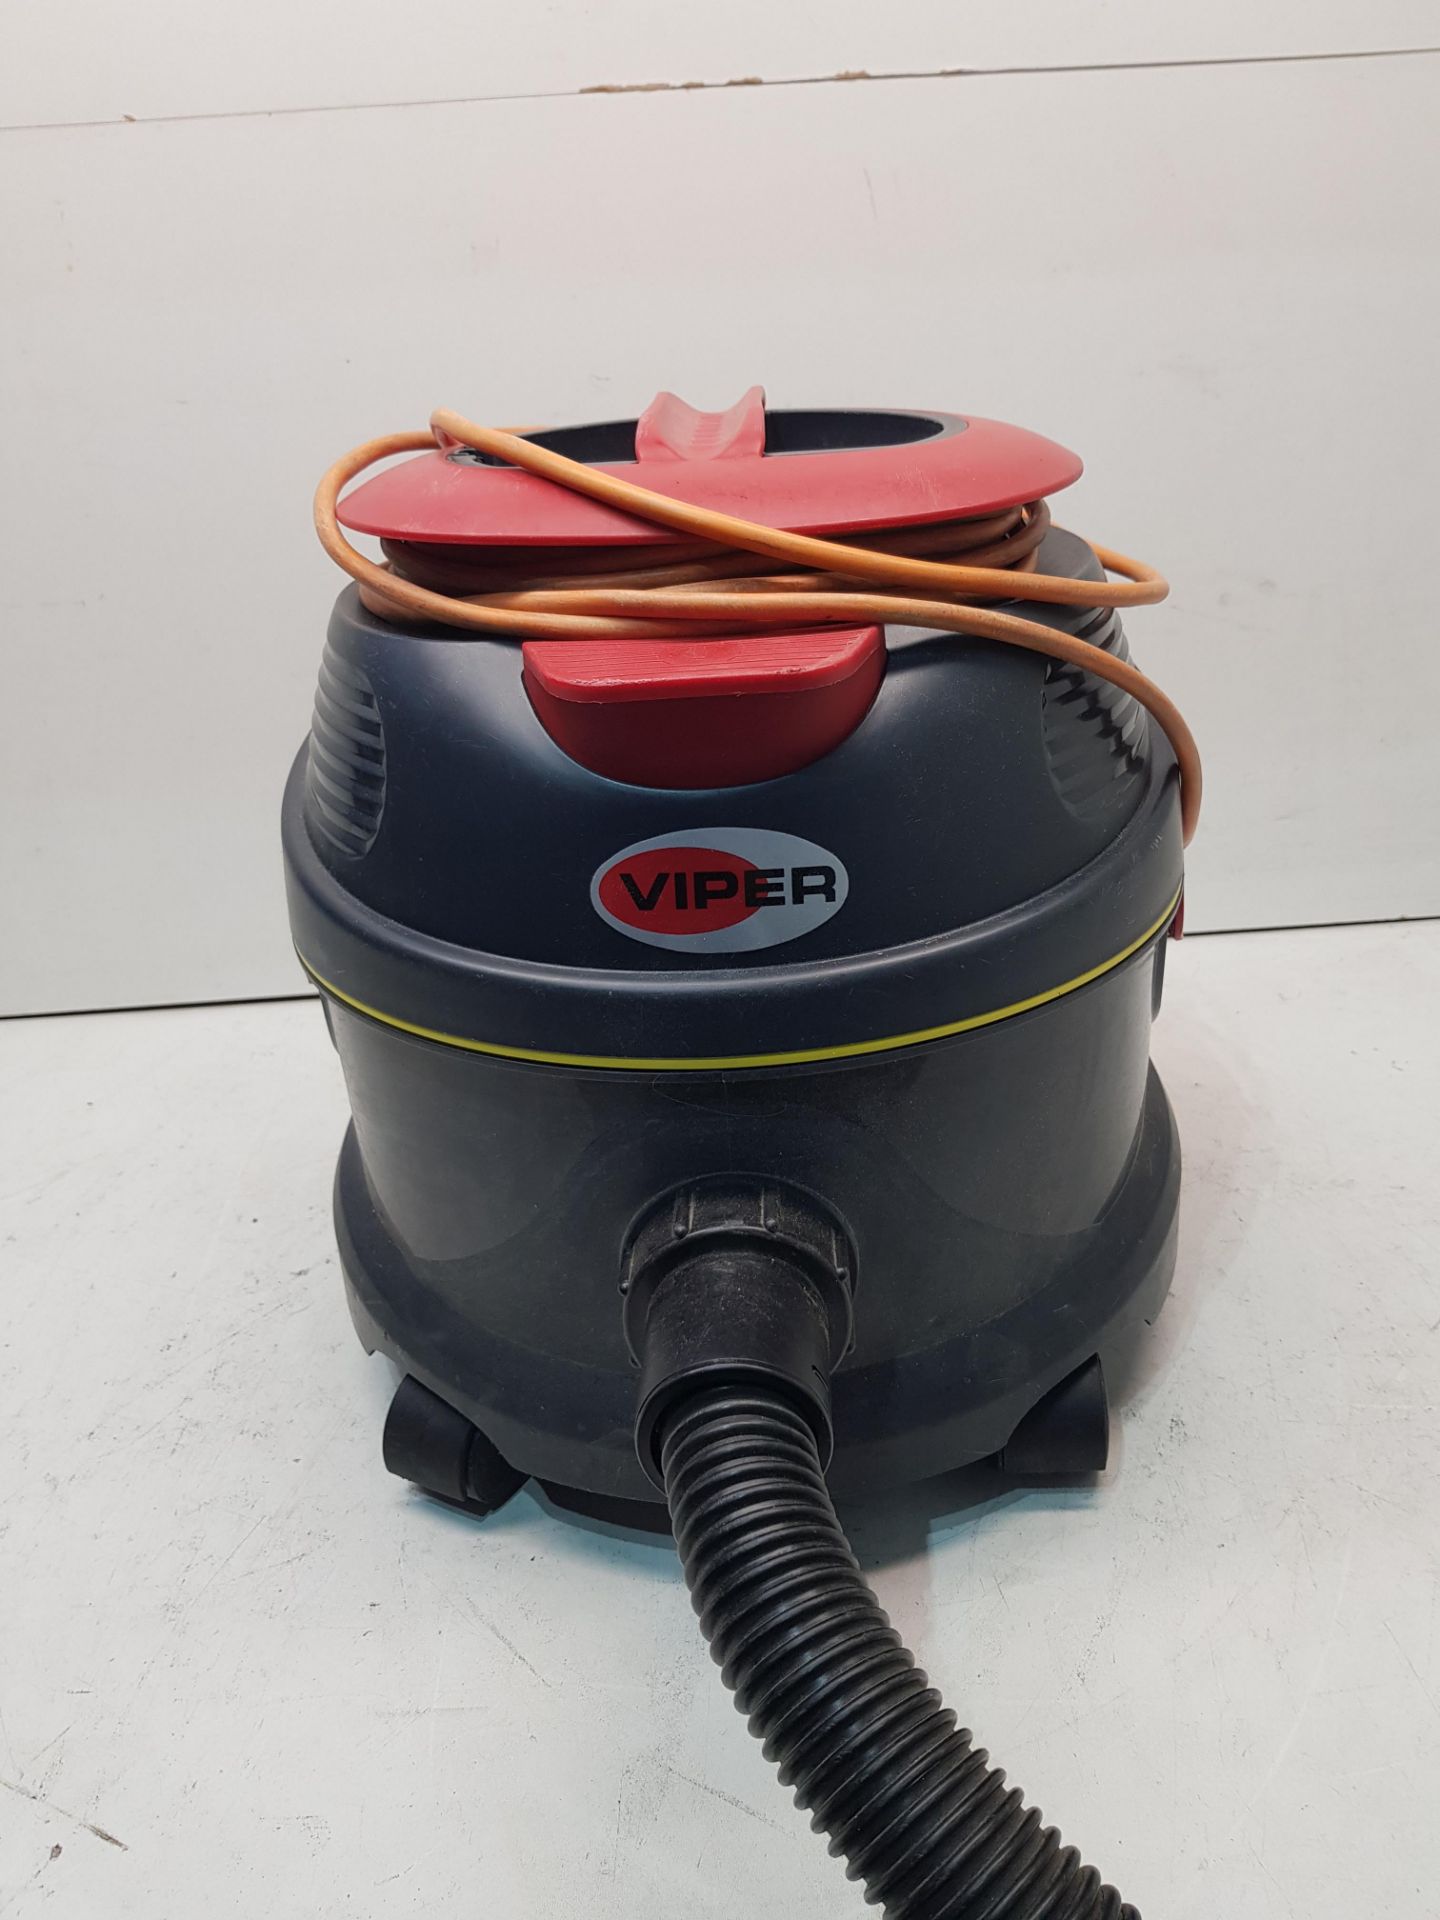 Viper Vacuum Cleaner